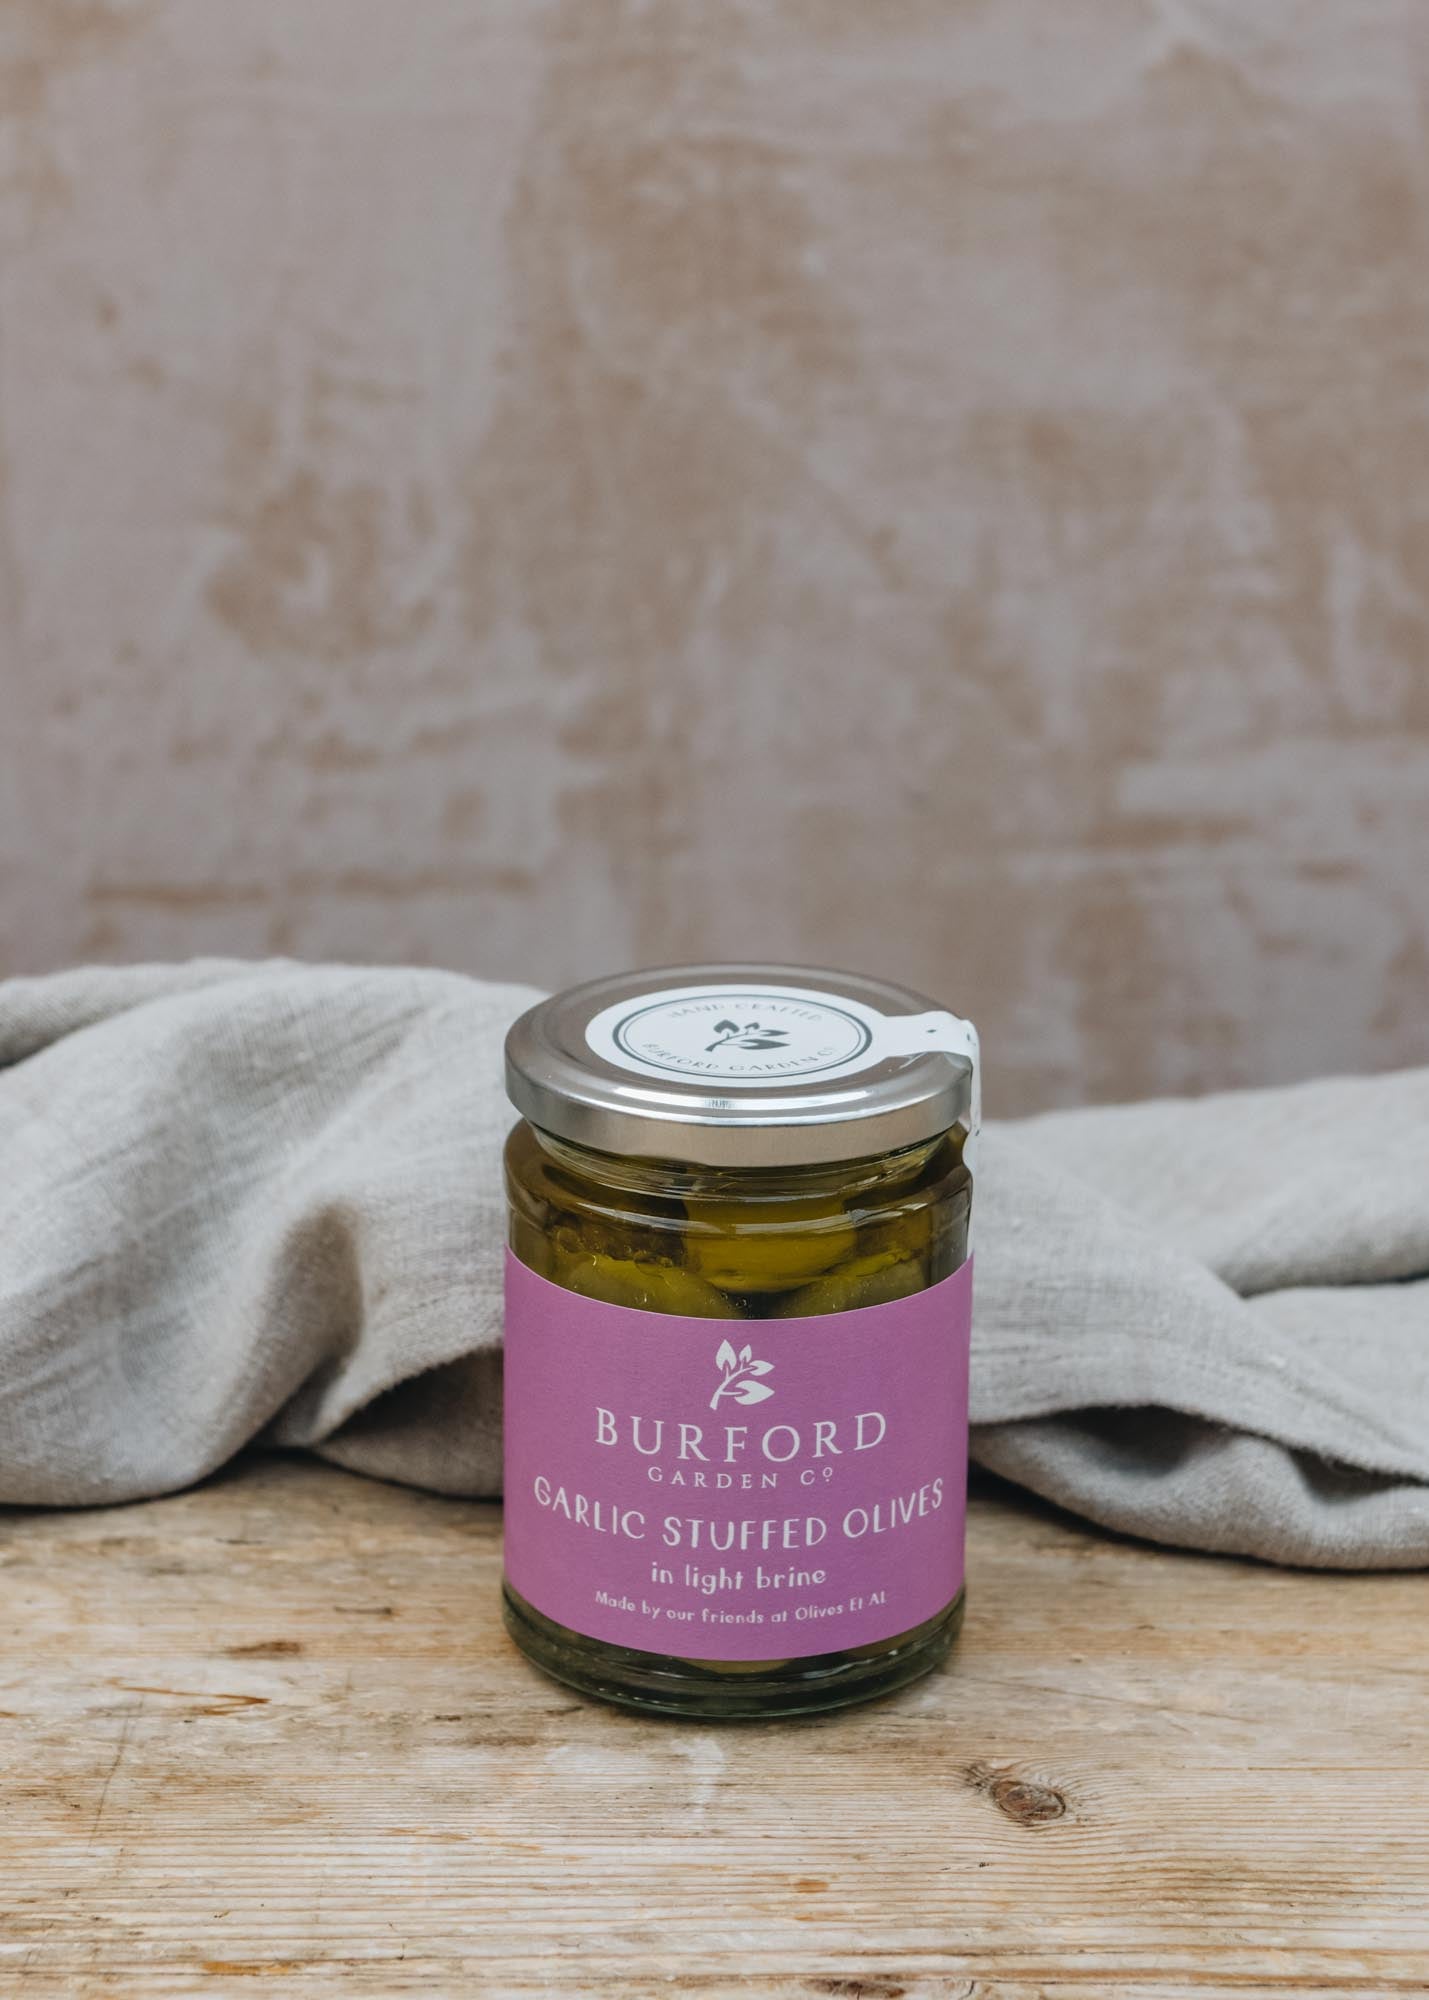 Burford Garlic Stuffed Olives